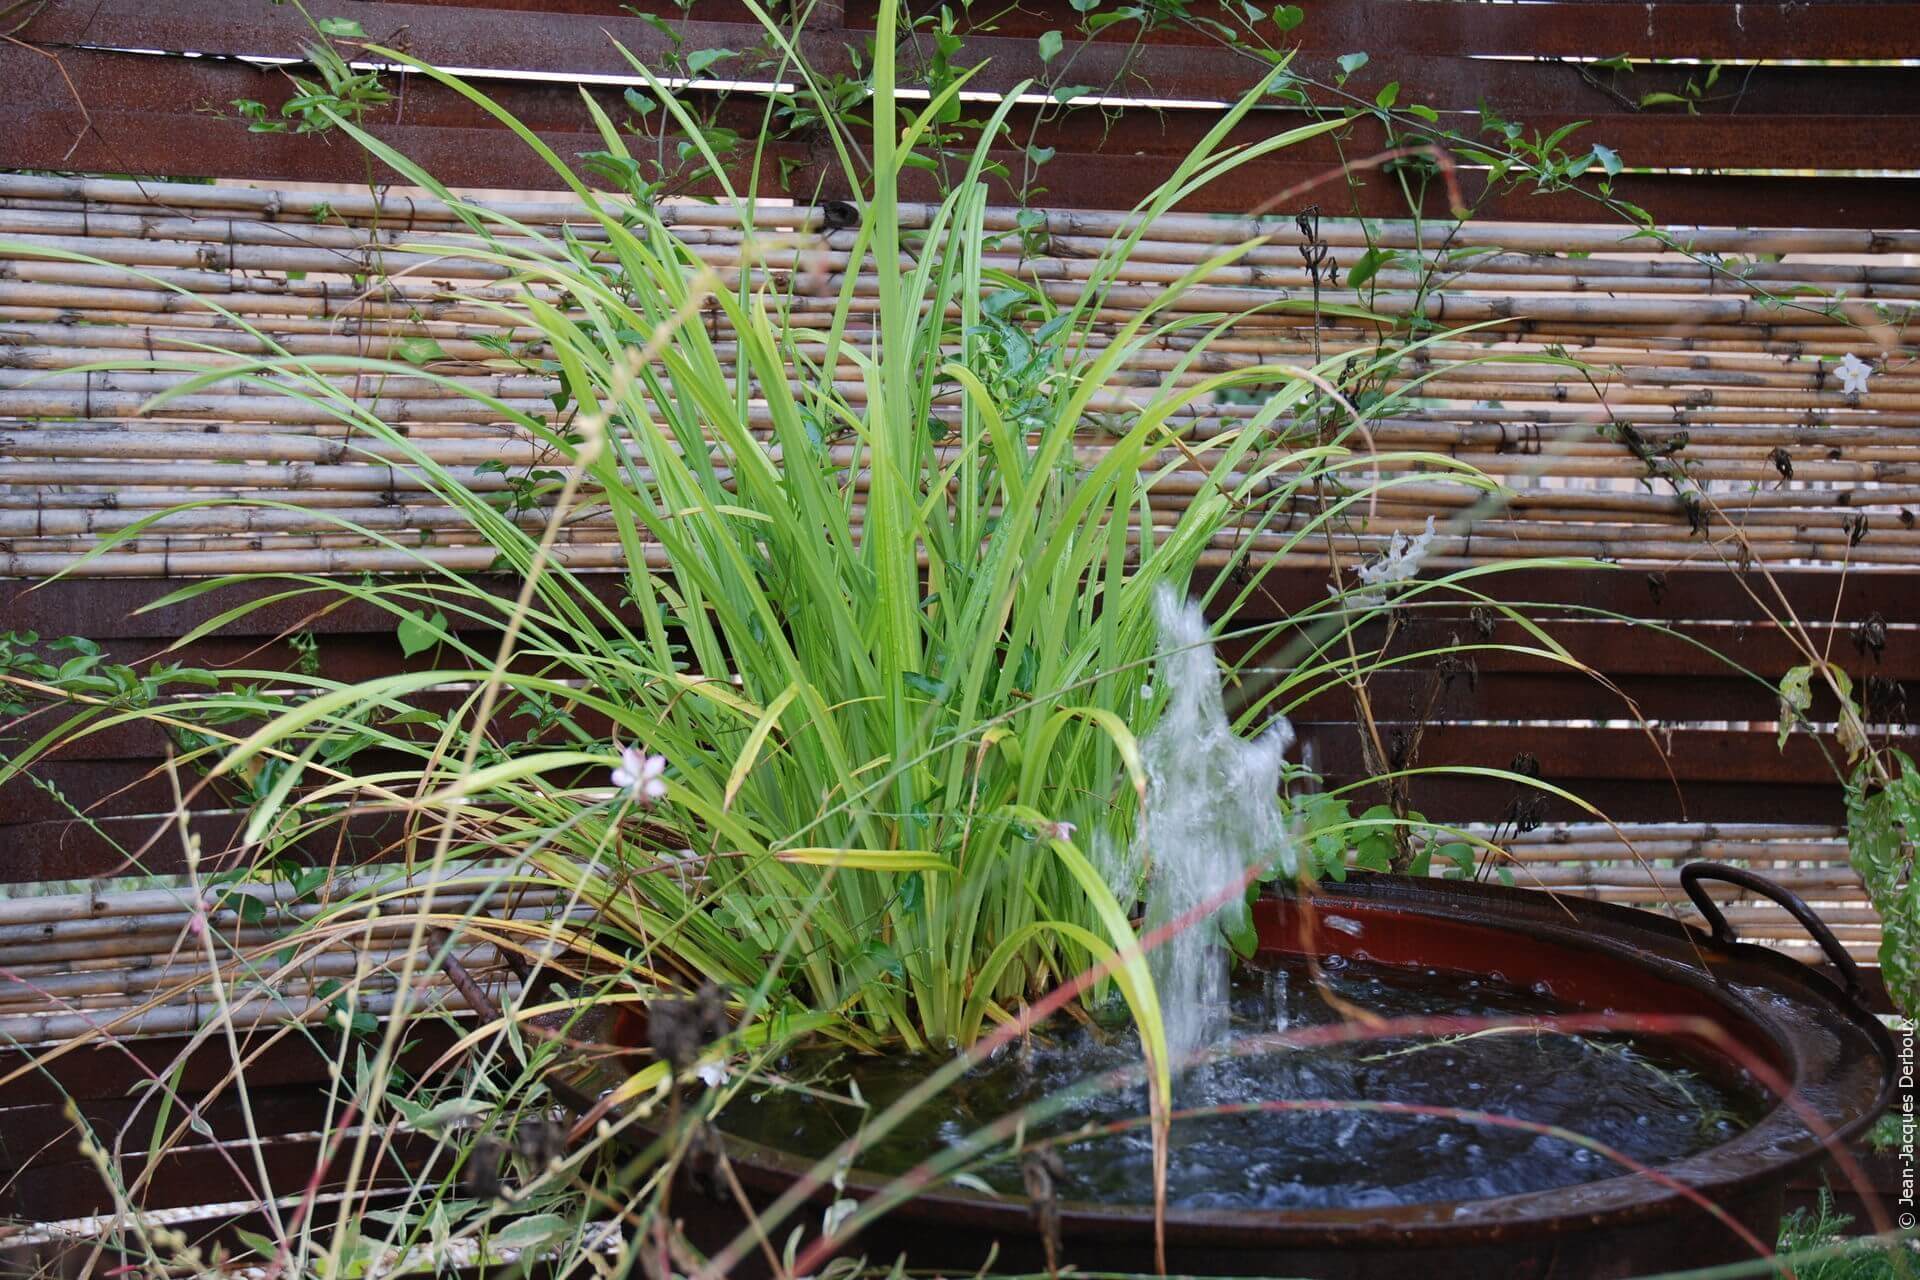 Fontaine dans un chaudron en métal brut, plante aquatique.